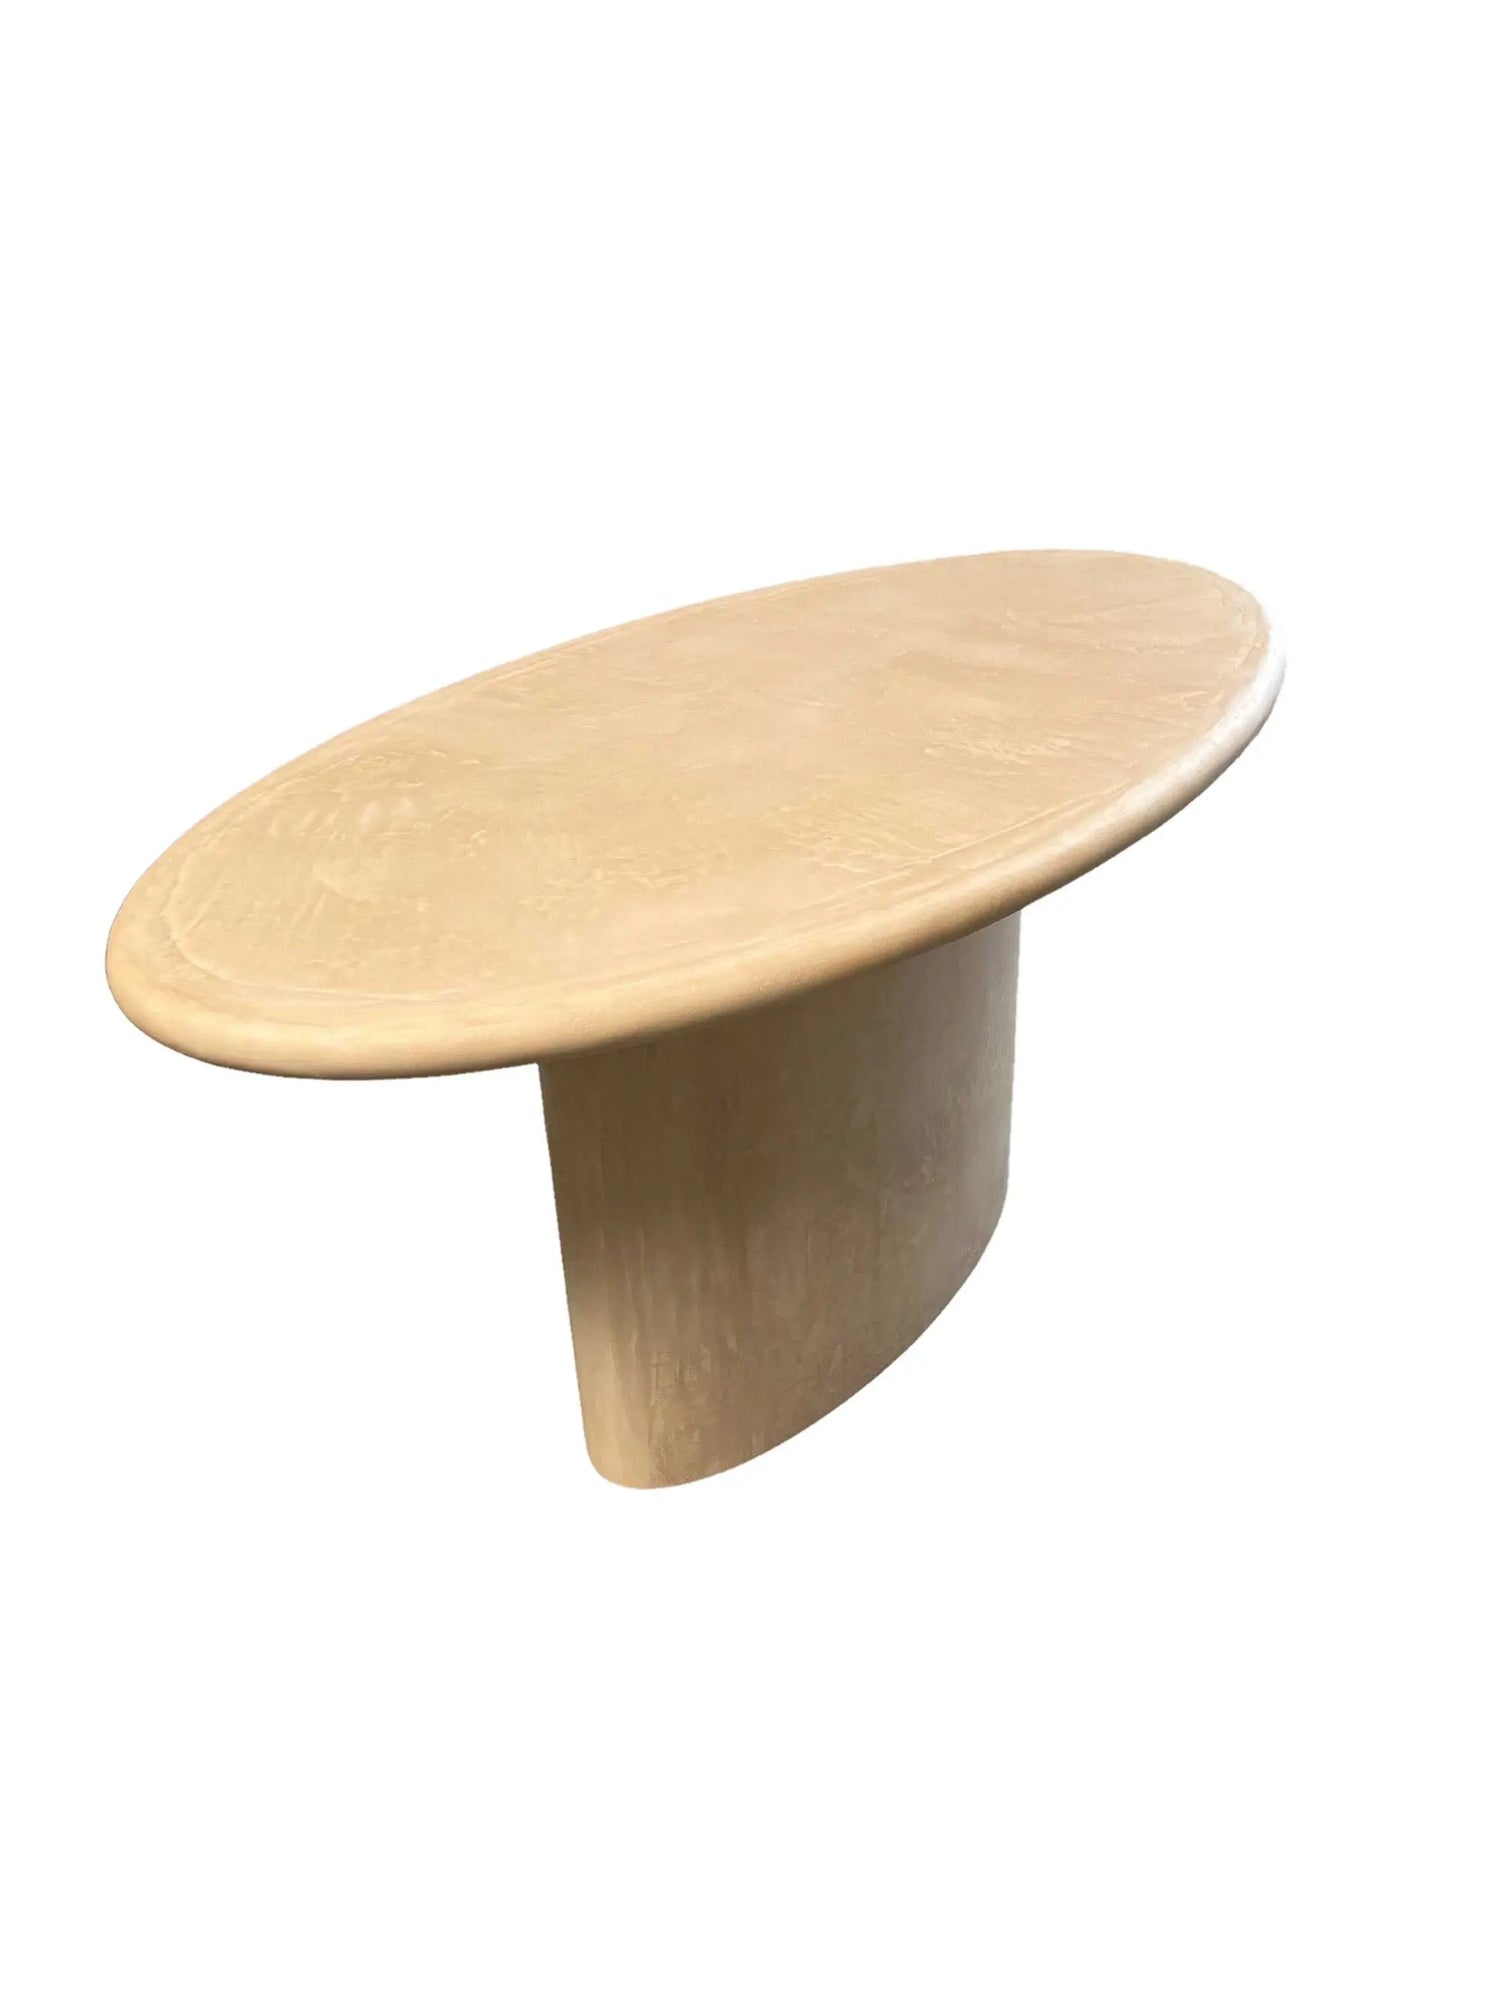 Amelia - Table salle-à-manger ellipse MORTEX® - The Concrete Table Co.